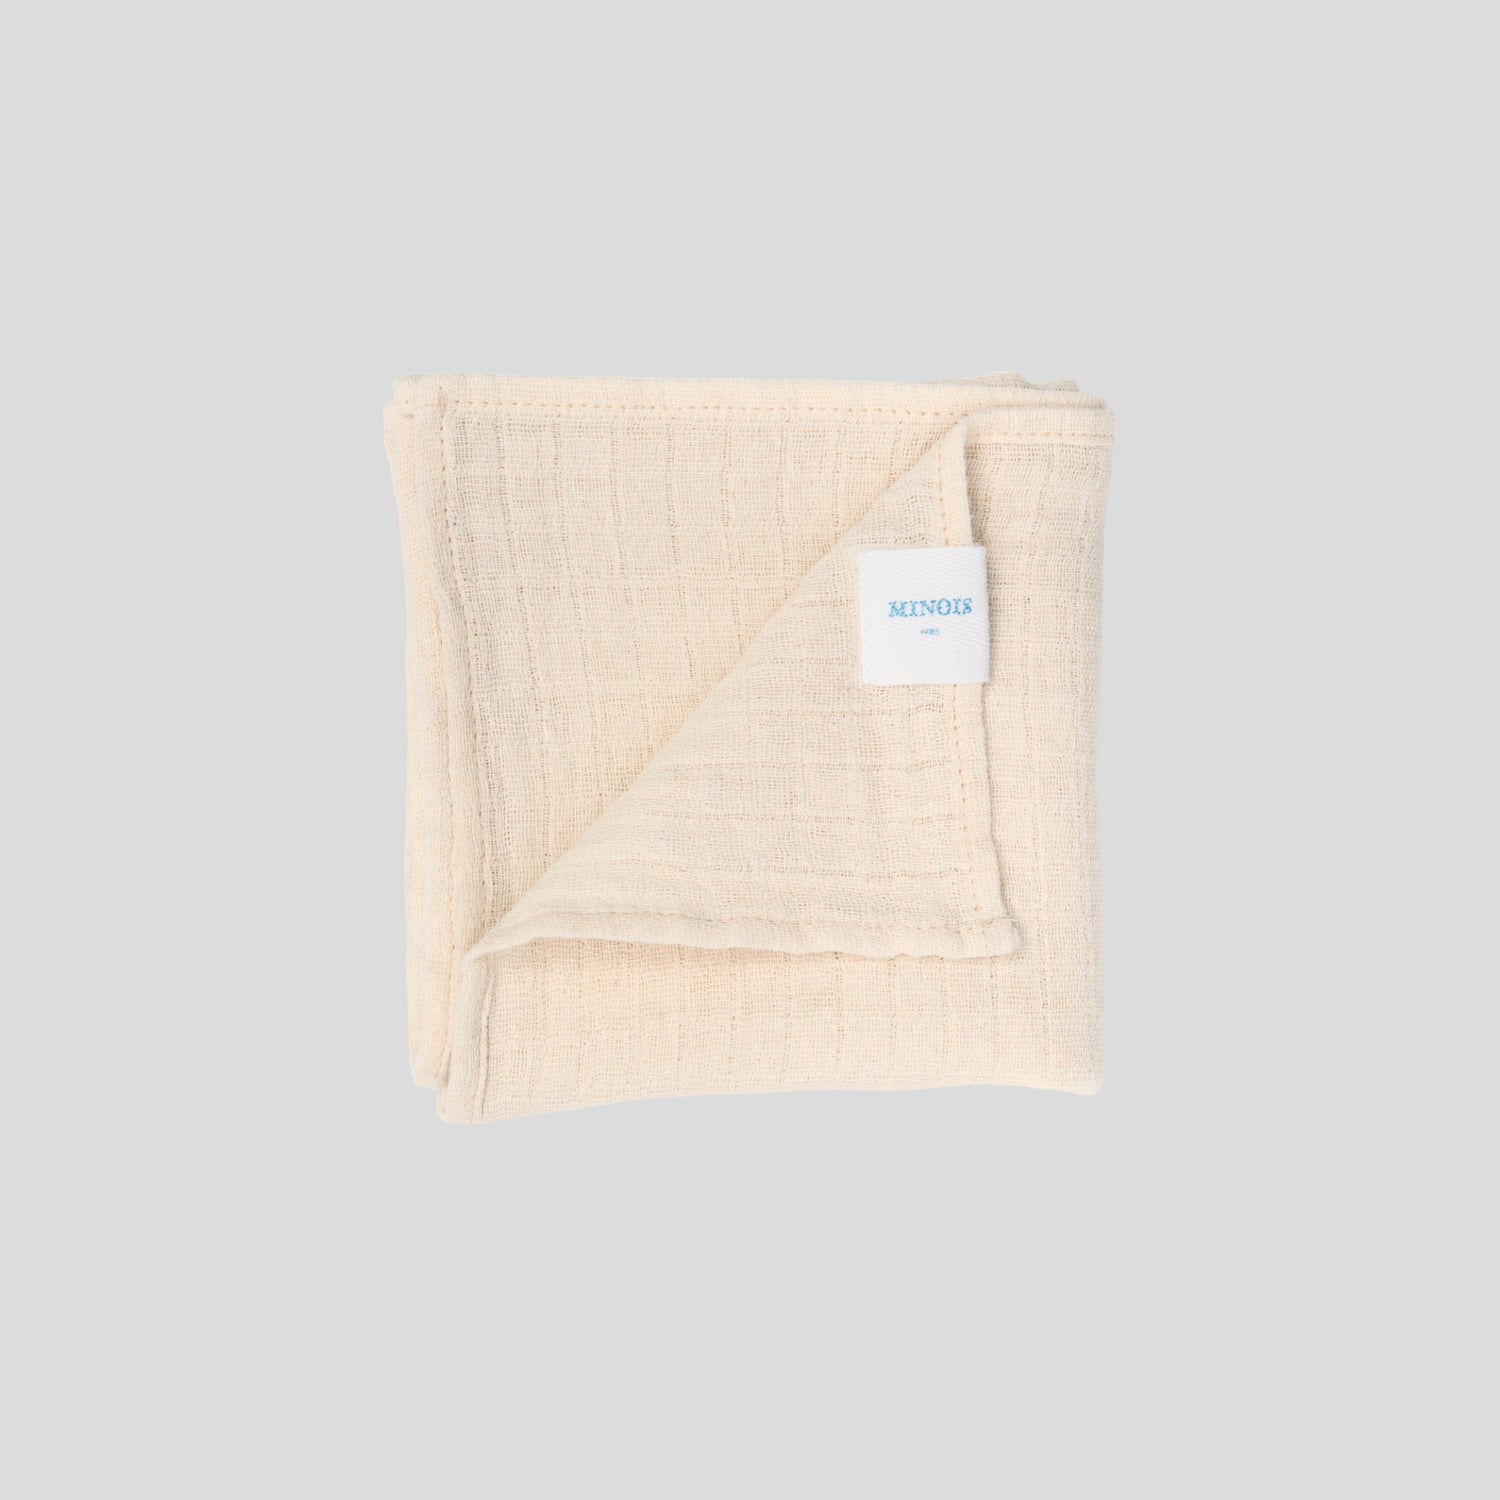 soft muslin cloth - 65 x 65 cm 